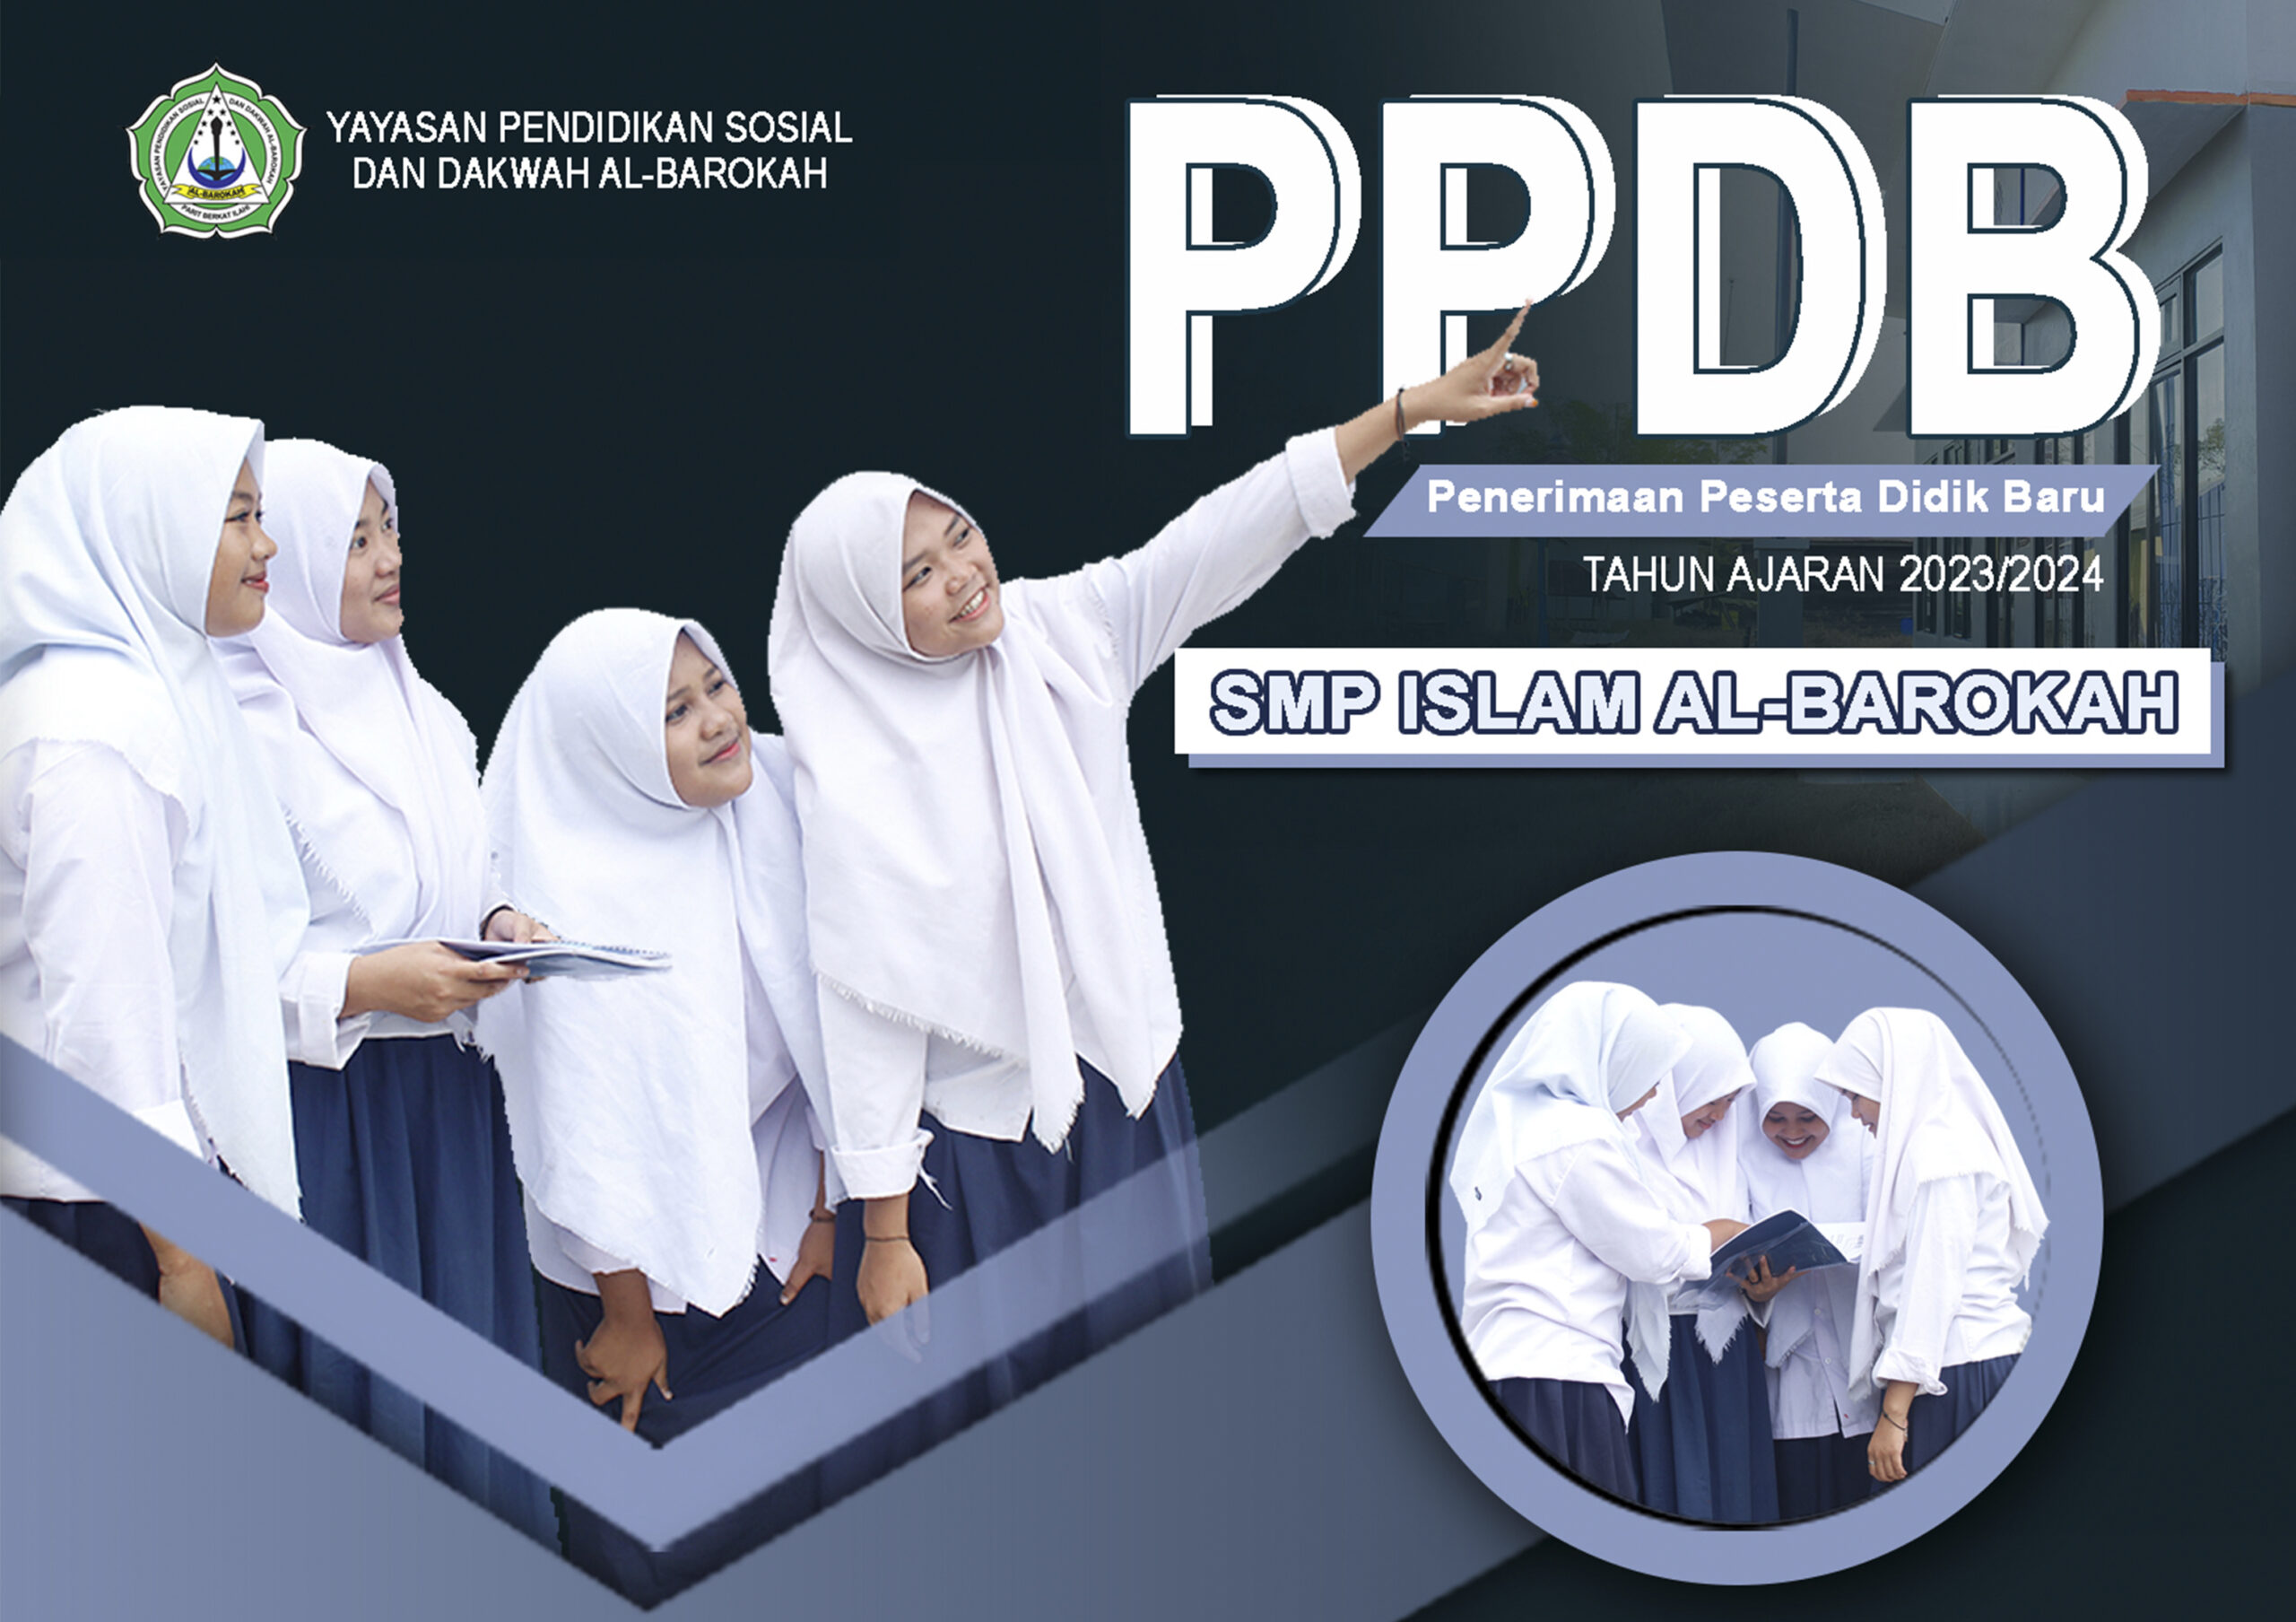 PPDB Penerimaan Peserta Didik Baru SMP Islam Al-Barokah Tahun 2023/2024: Membangun Generasi Berkualitas dengan Landasan Islami